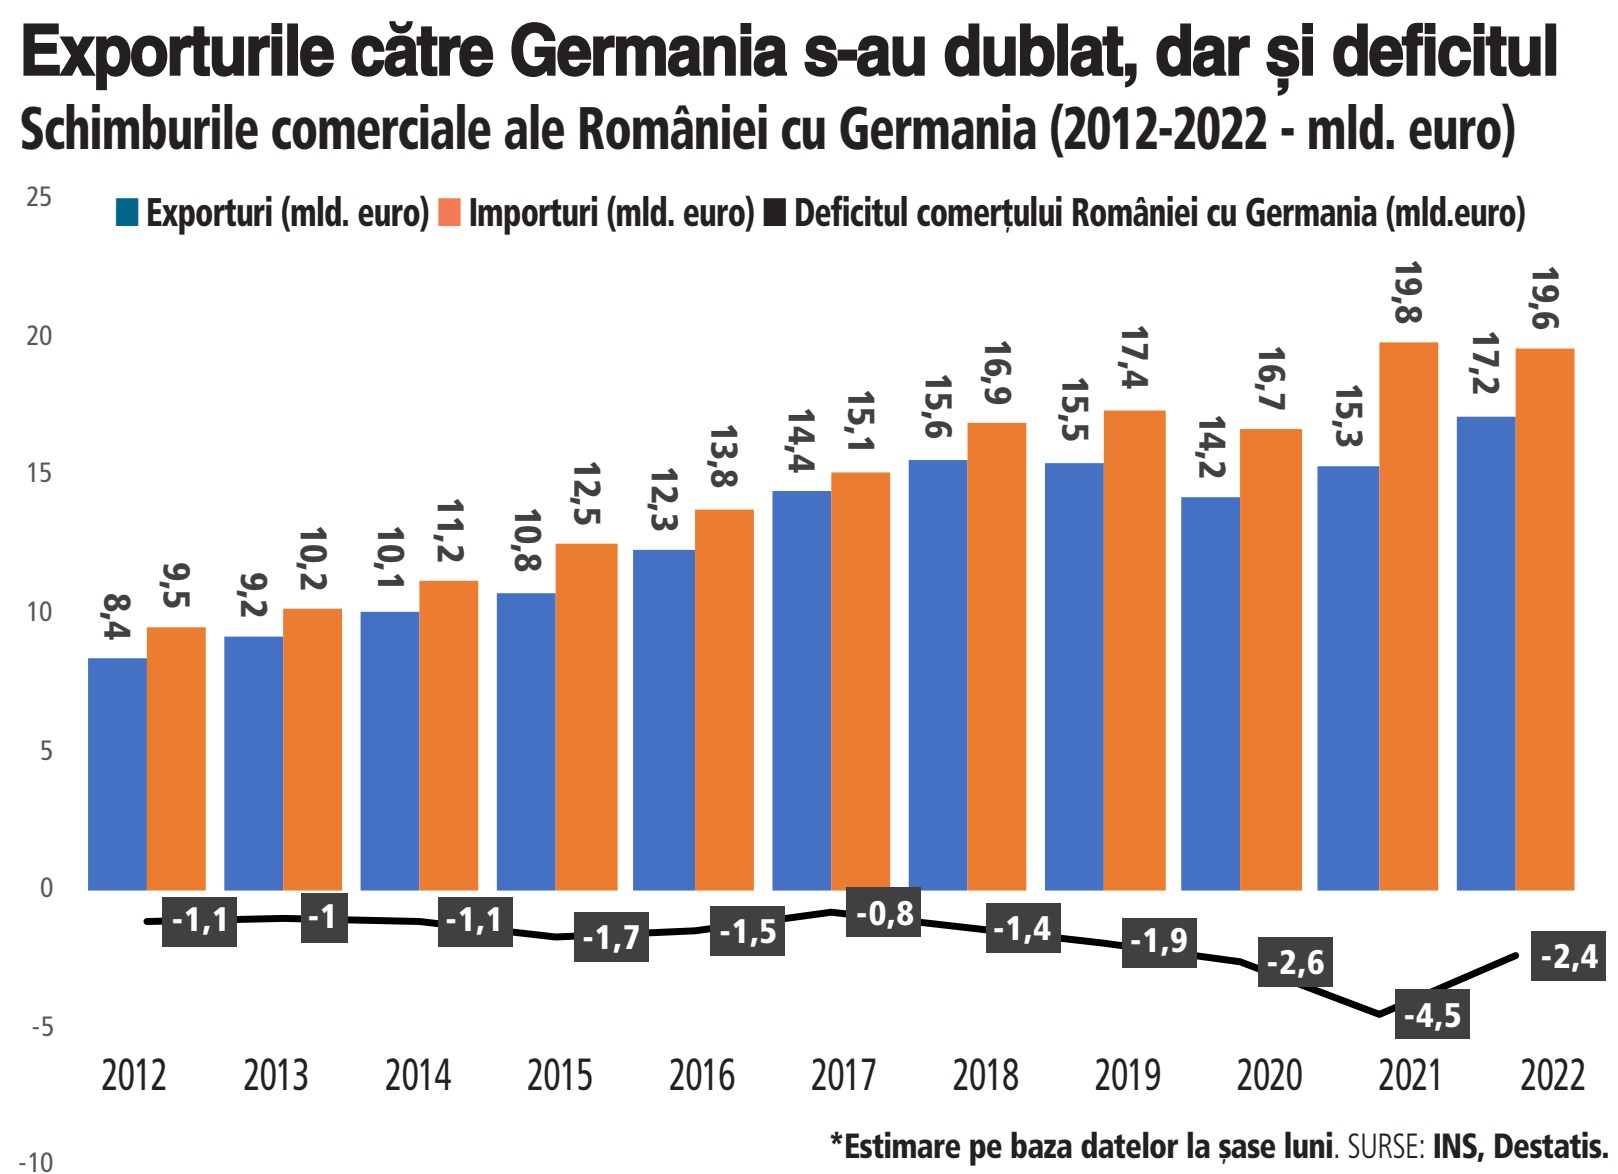 Exporturile României către Germania, principala piaţă, s-au dublat în ultimii 10 ani, dar deficitul comercial către piaţa germană a crescut şi mai mult